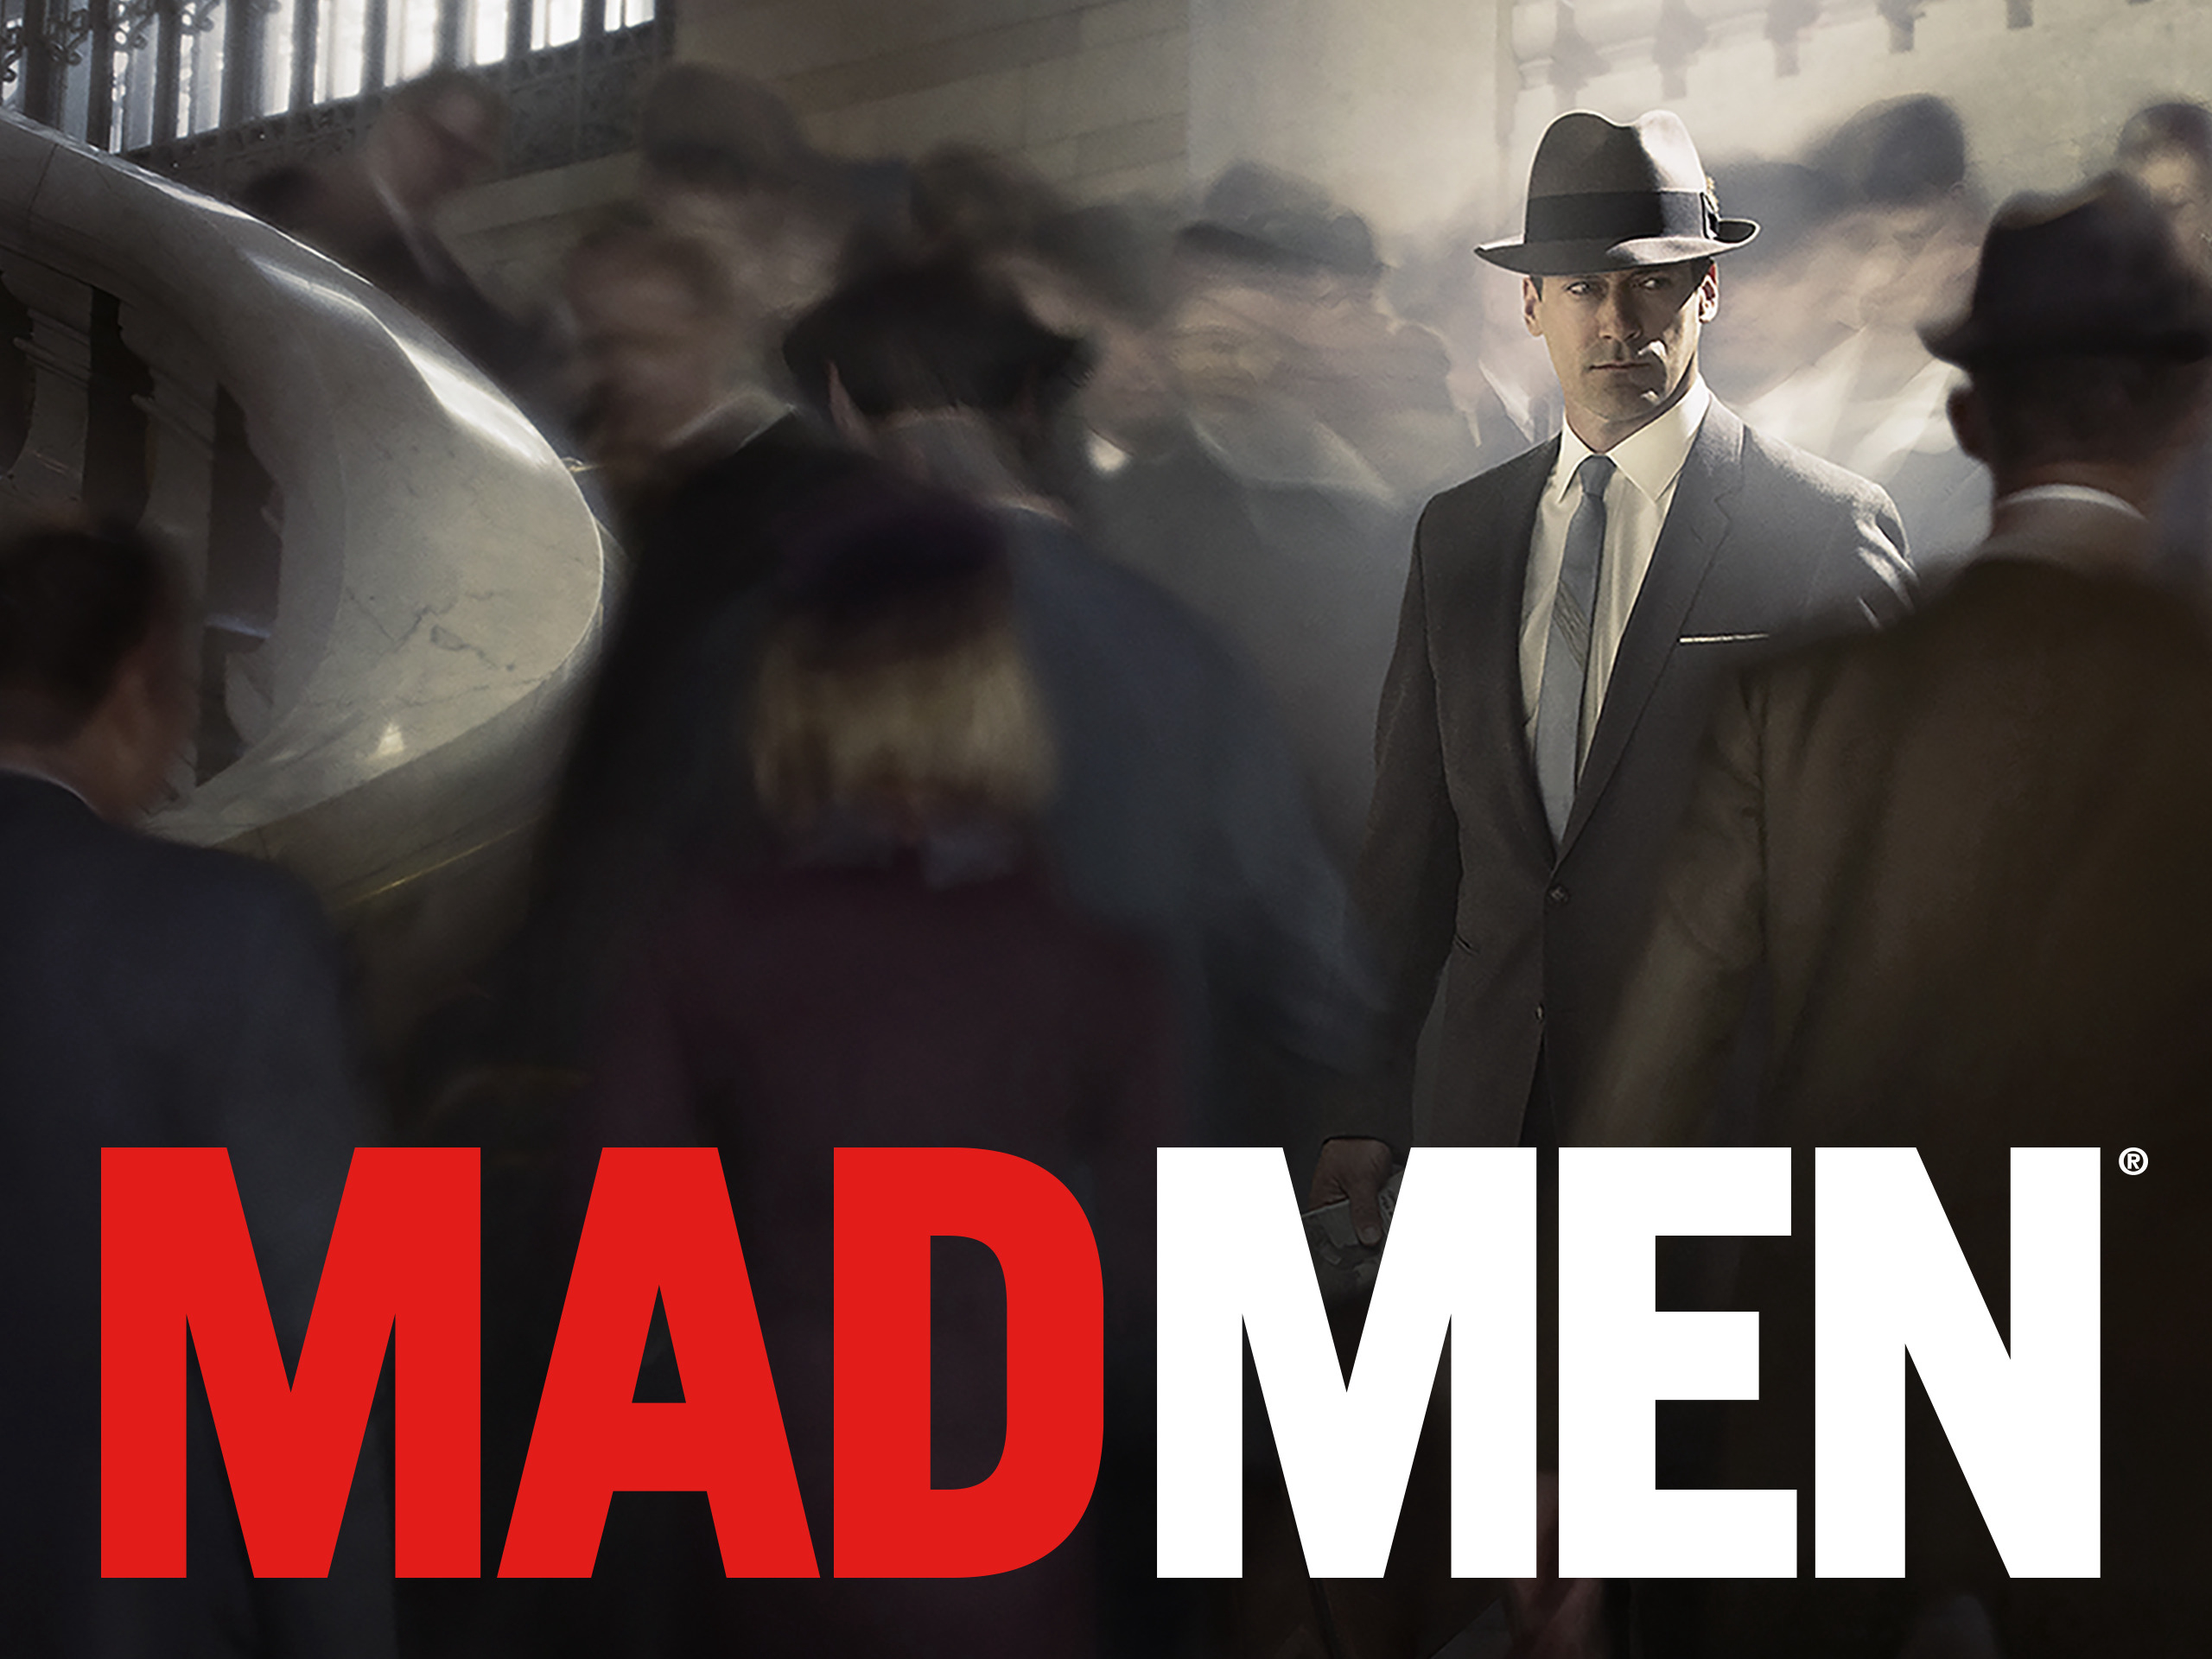 Mad Men (Season 2) / Mad Men (Season 2) (2008)